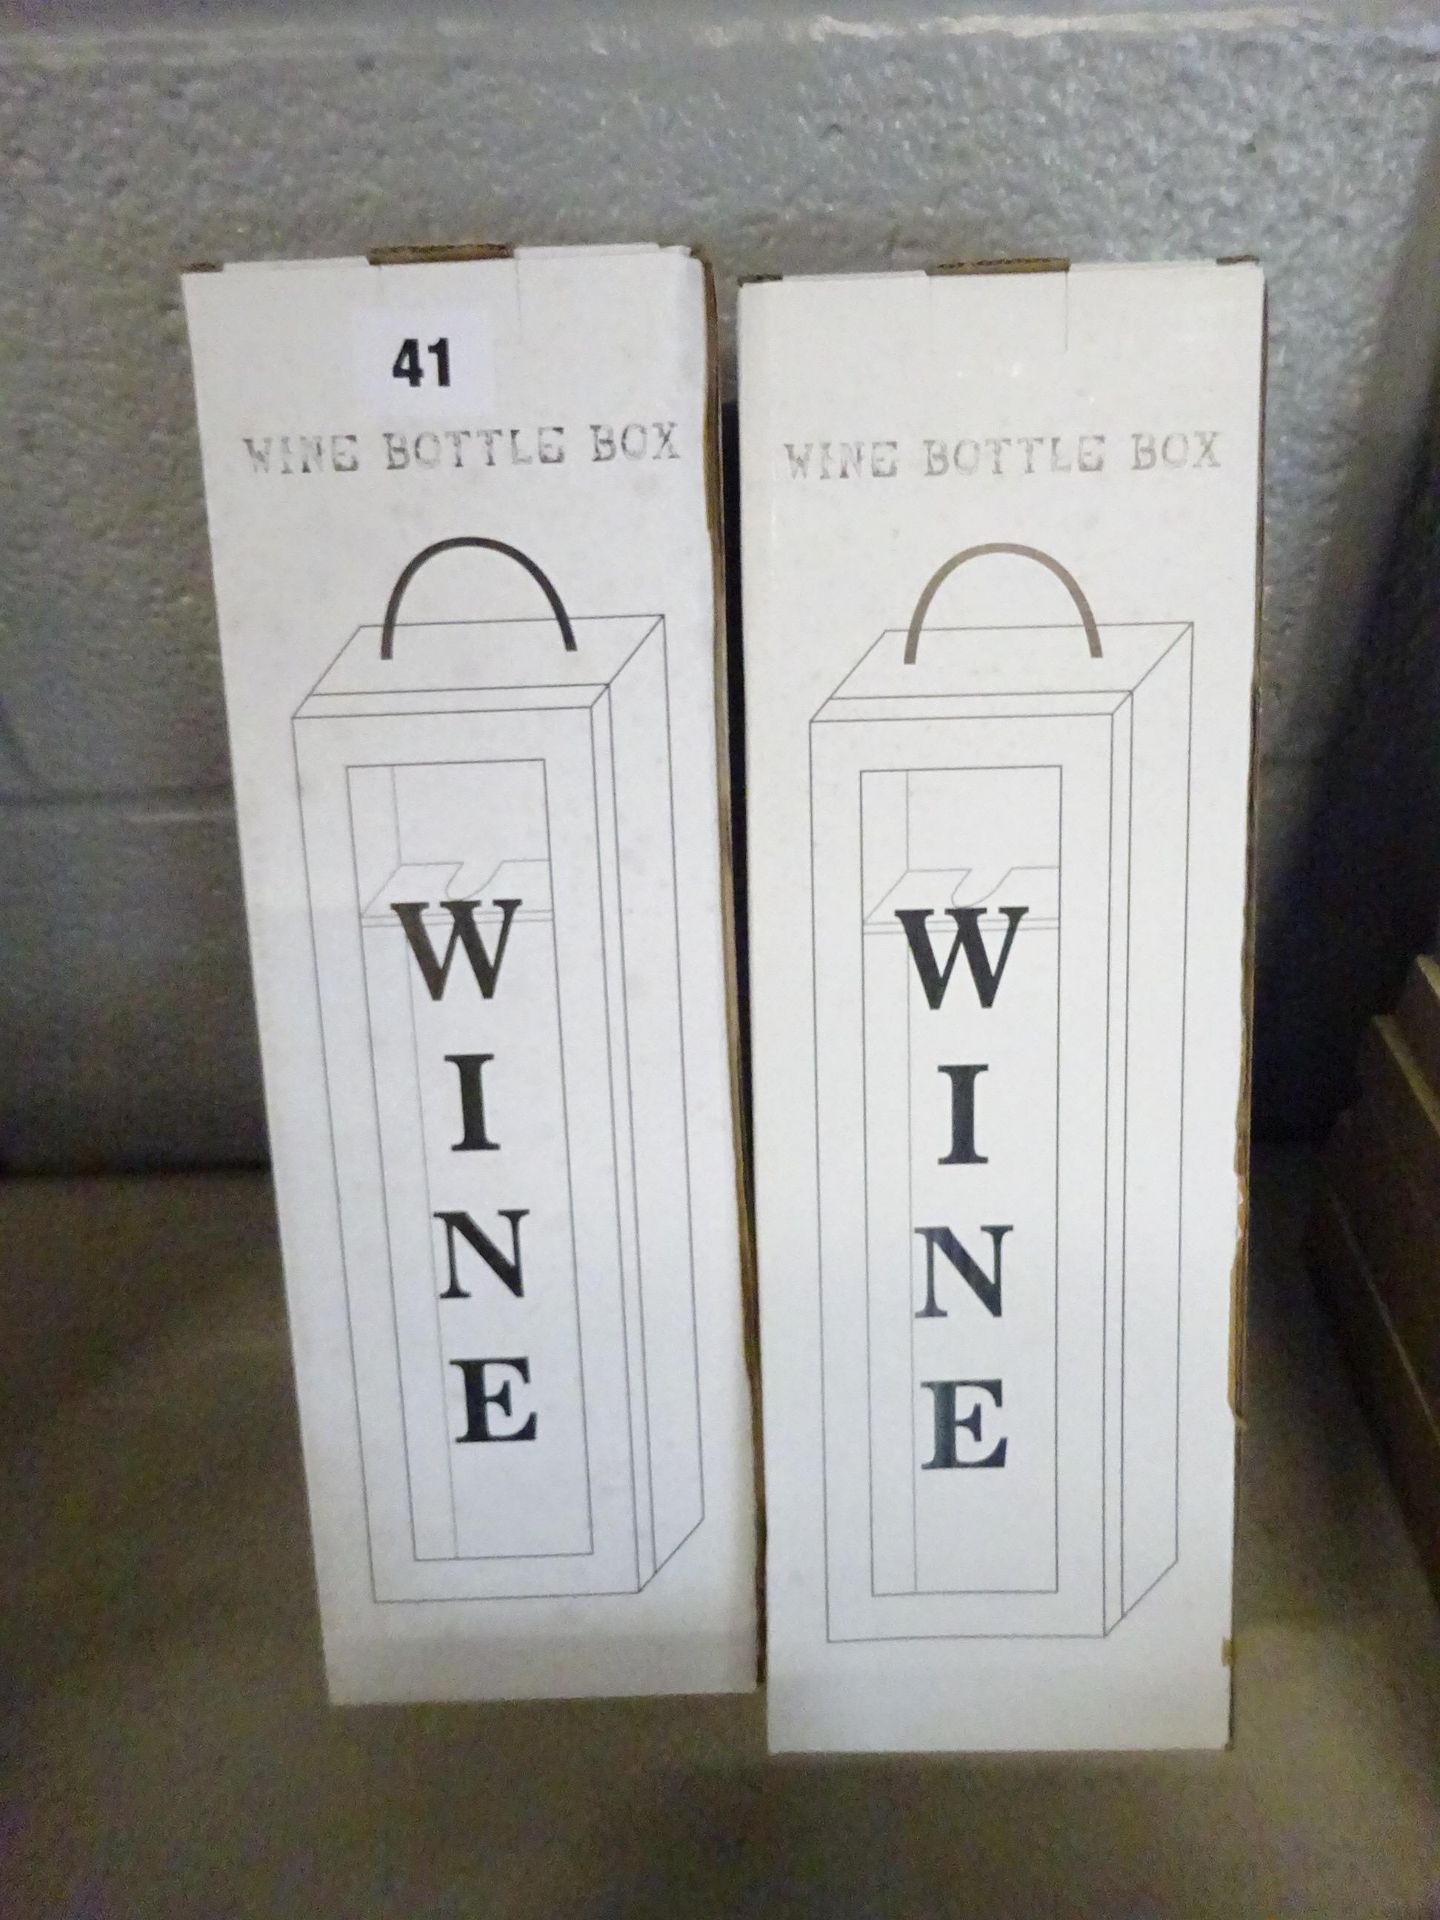 X2 WINE BOTTLE BOXES